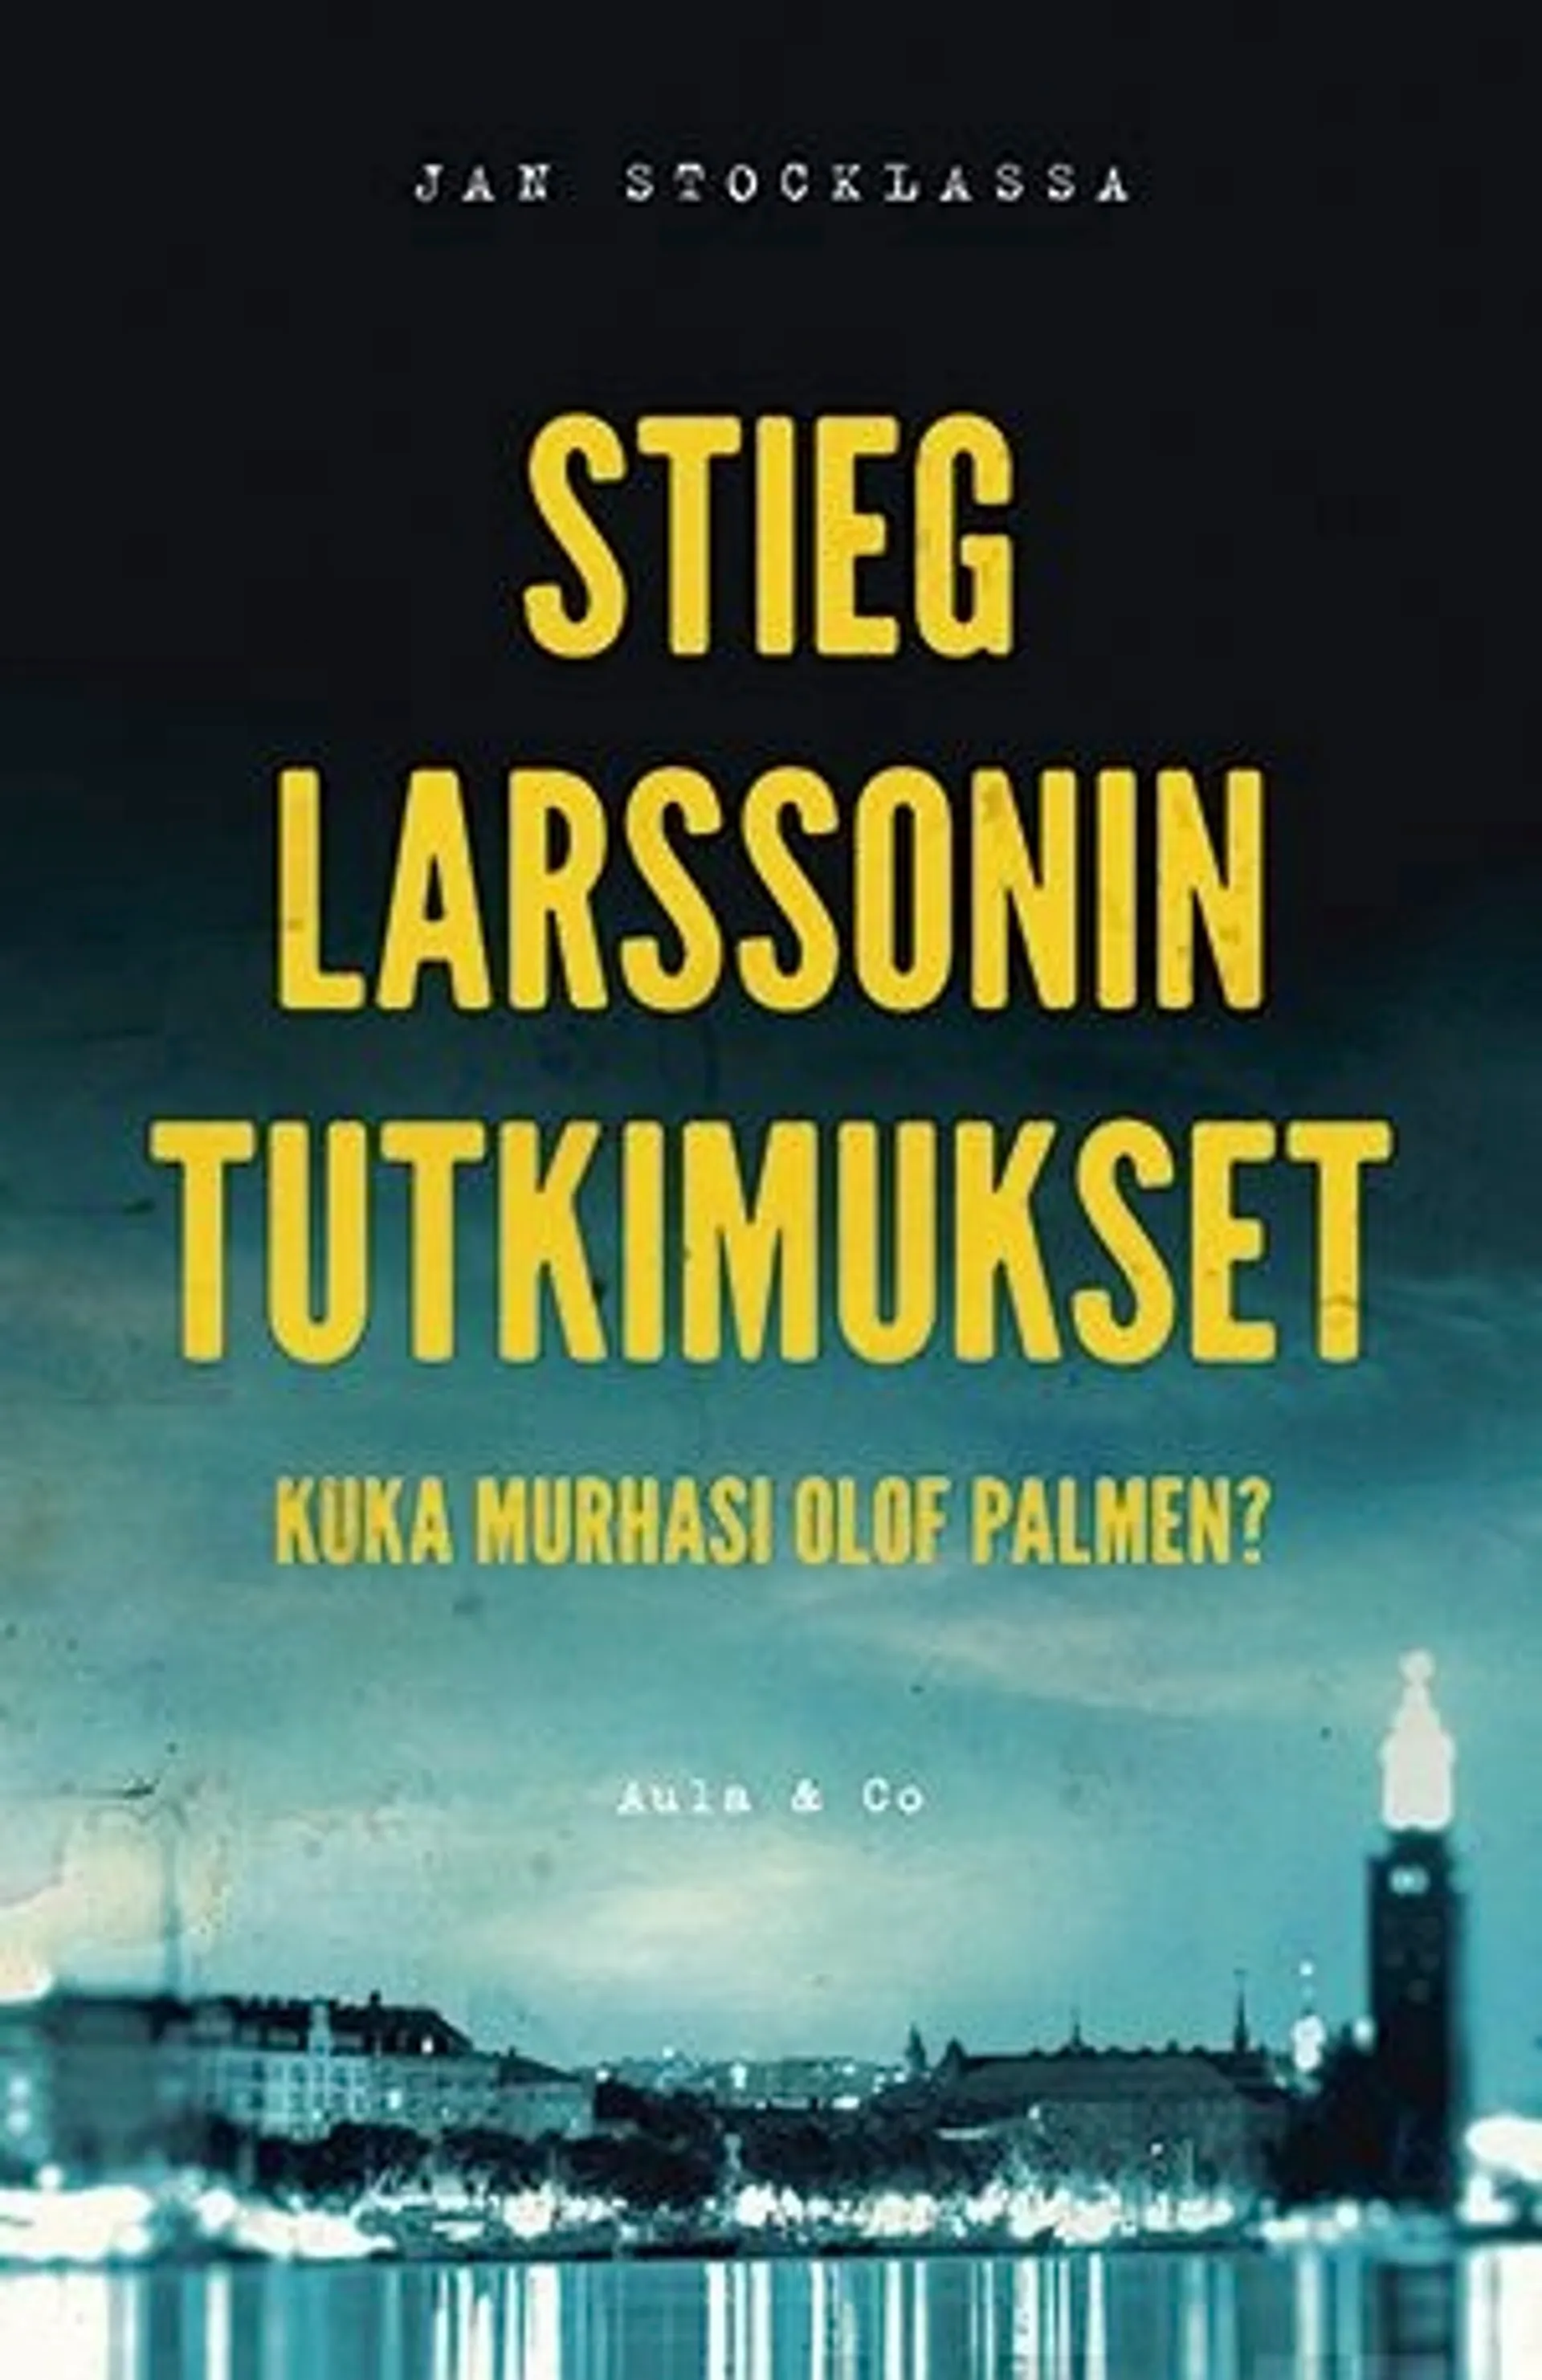 Stocklassa, Stieg Larssonin tutkimukset